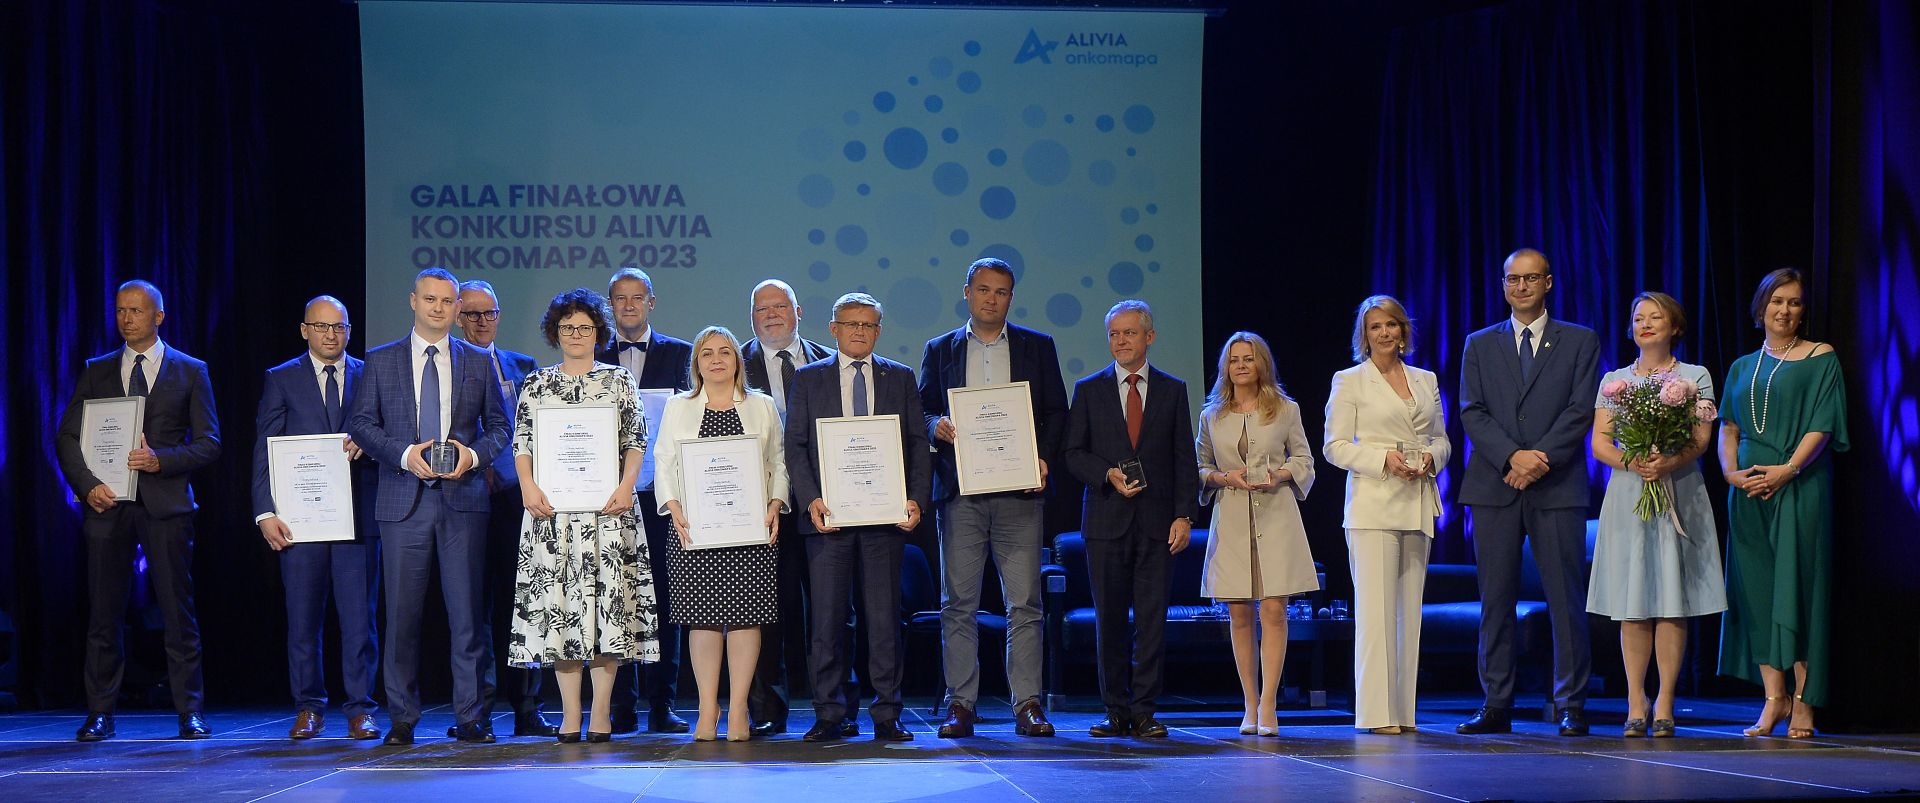 Gala Finałowa konkursu Alivia Onkomapa 2023